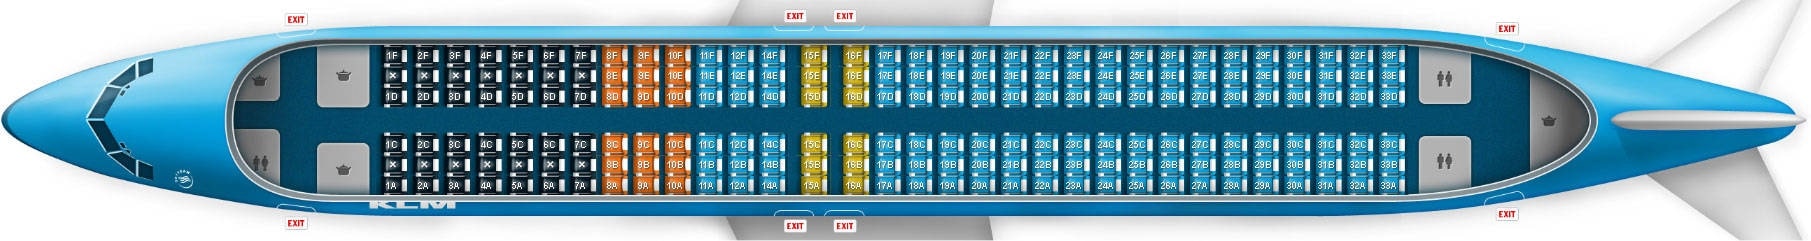 assentos do aviao - Dicas para viajar de avião pela primeira vez